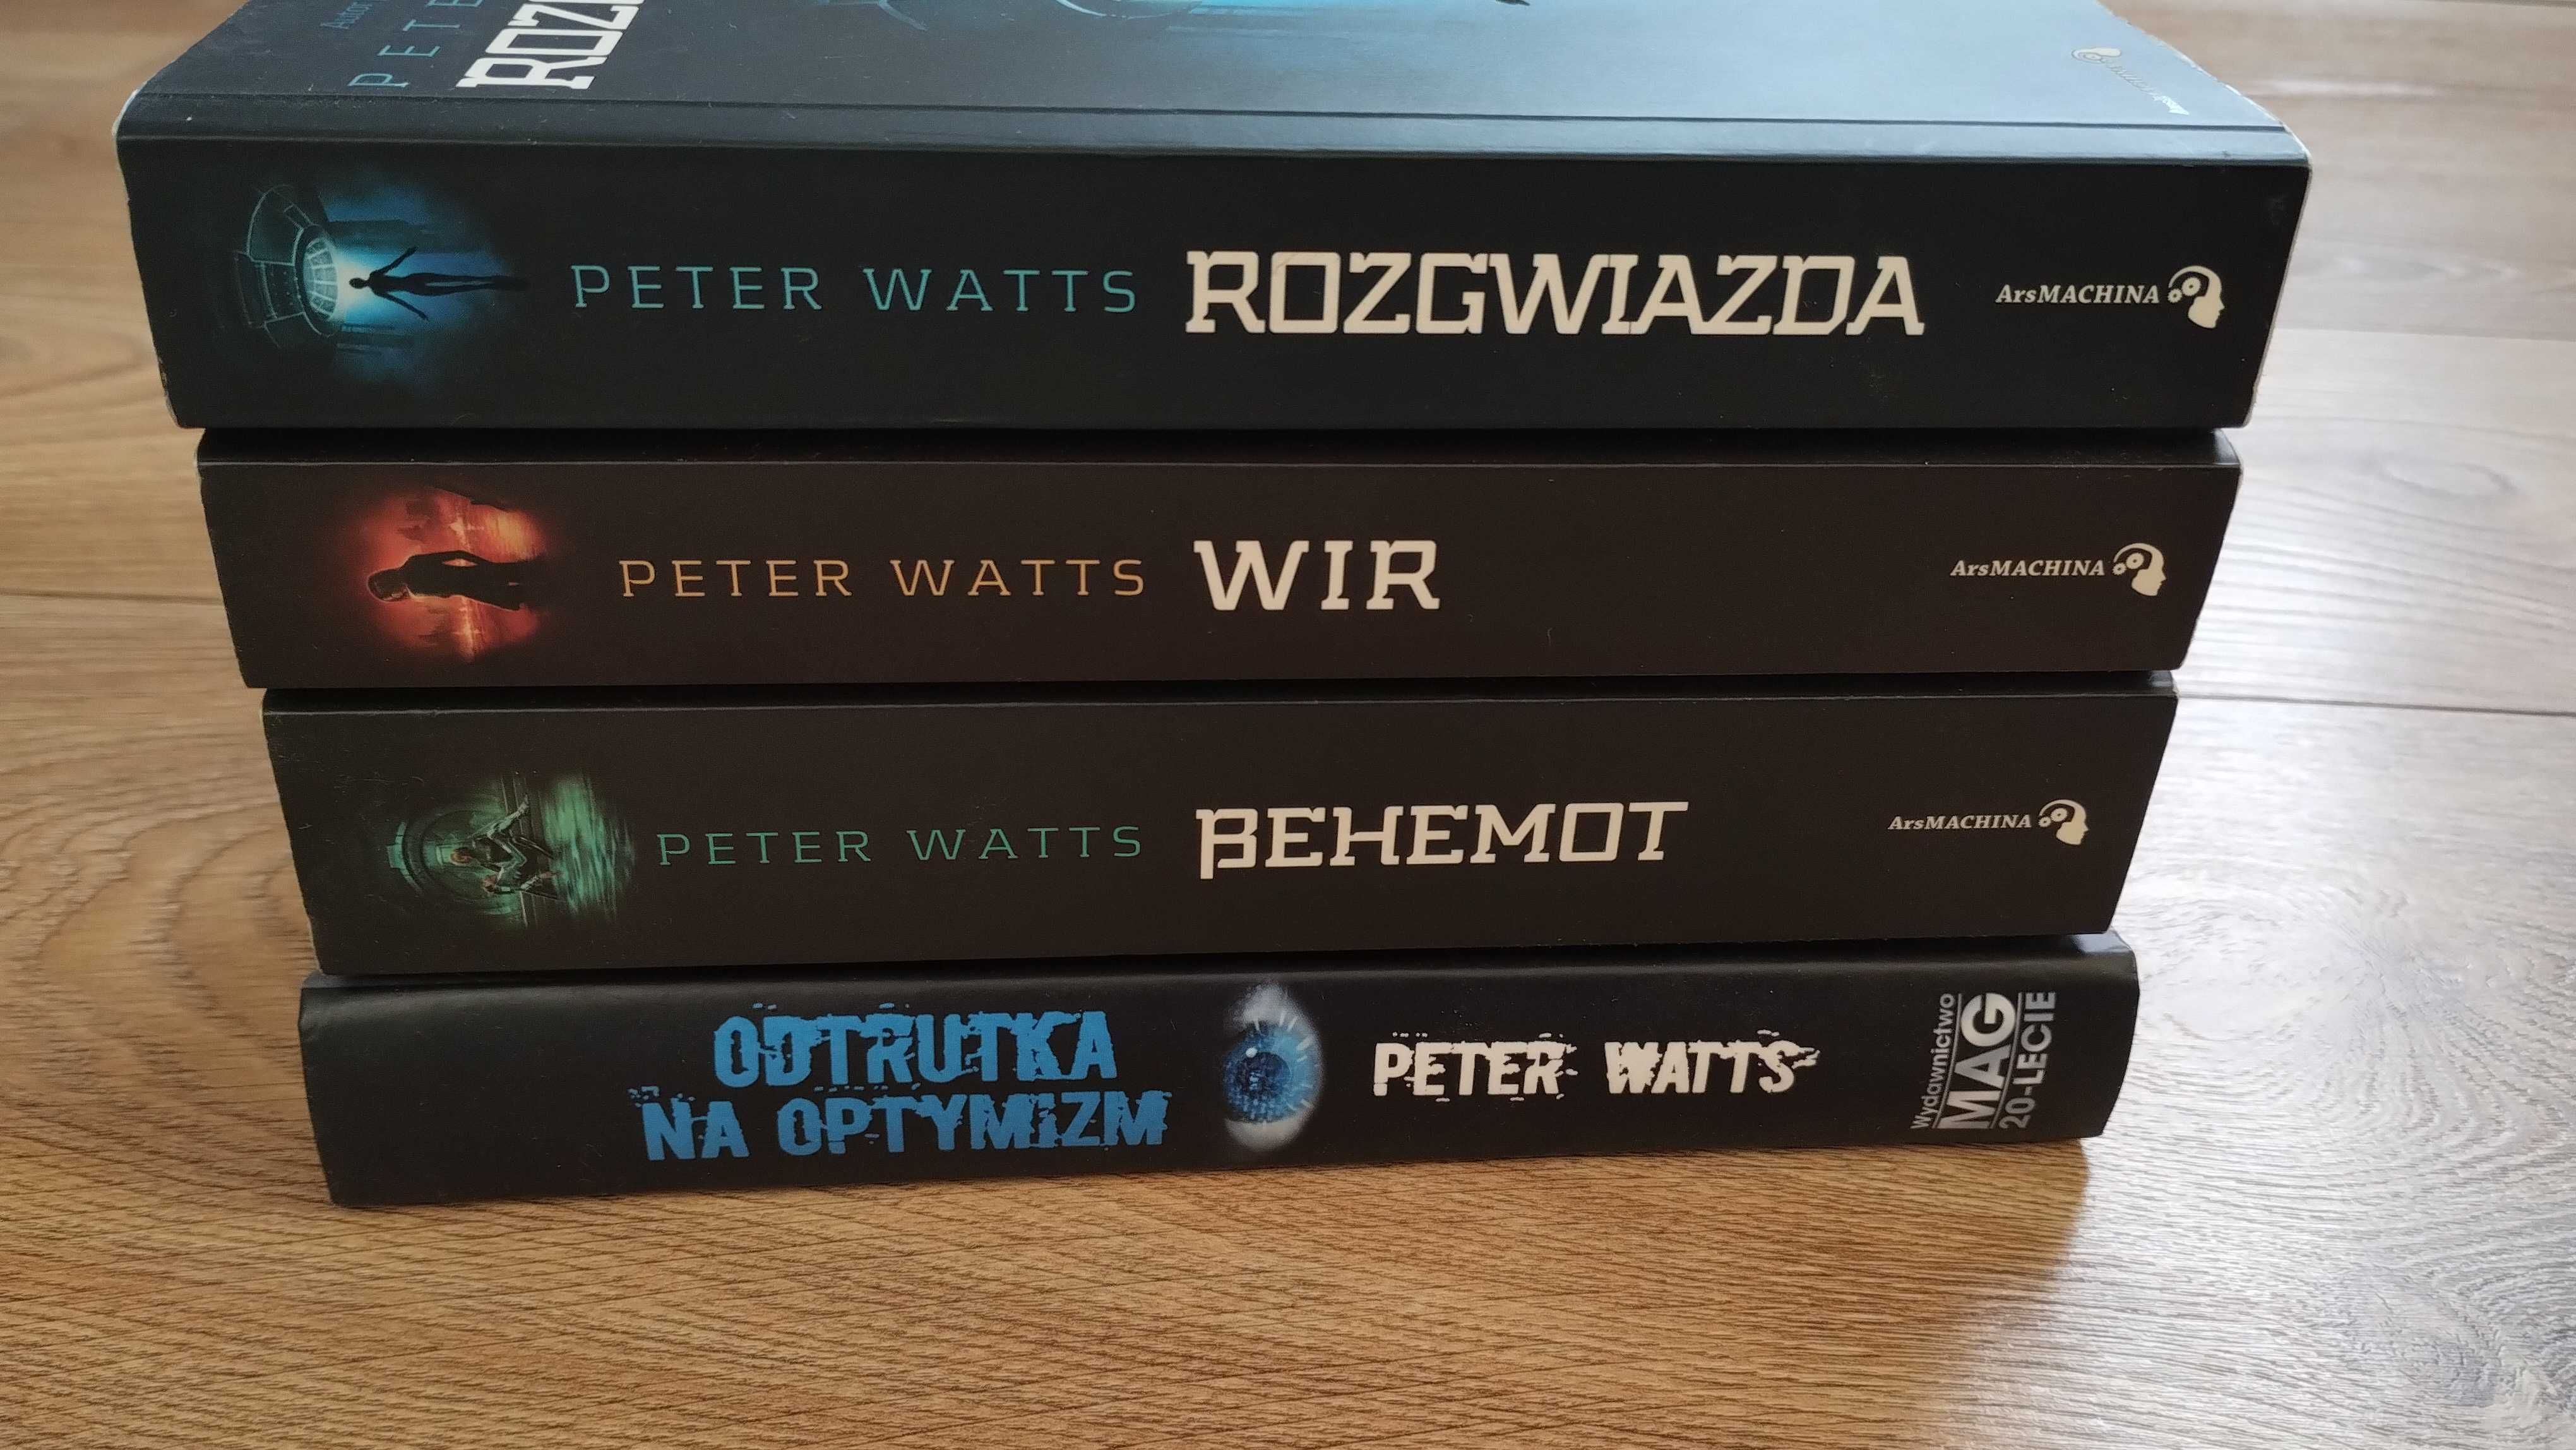 2x Peter Watts Rozgwiazda Wir